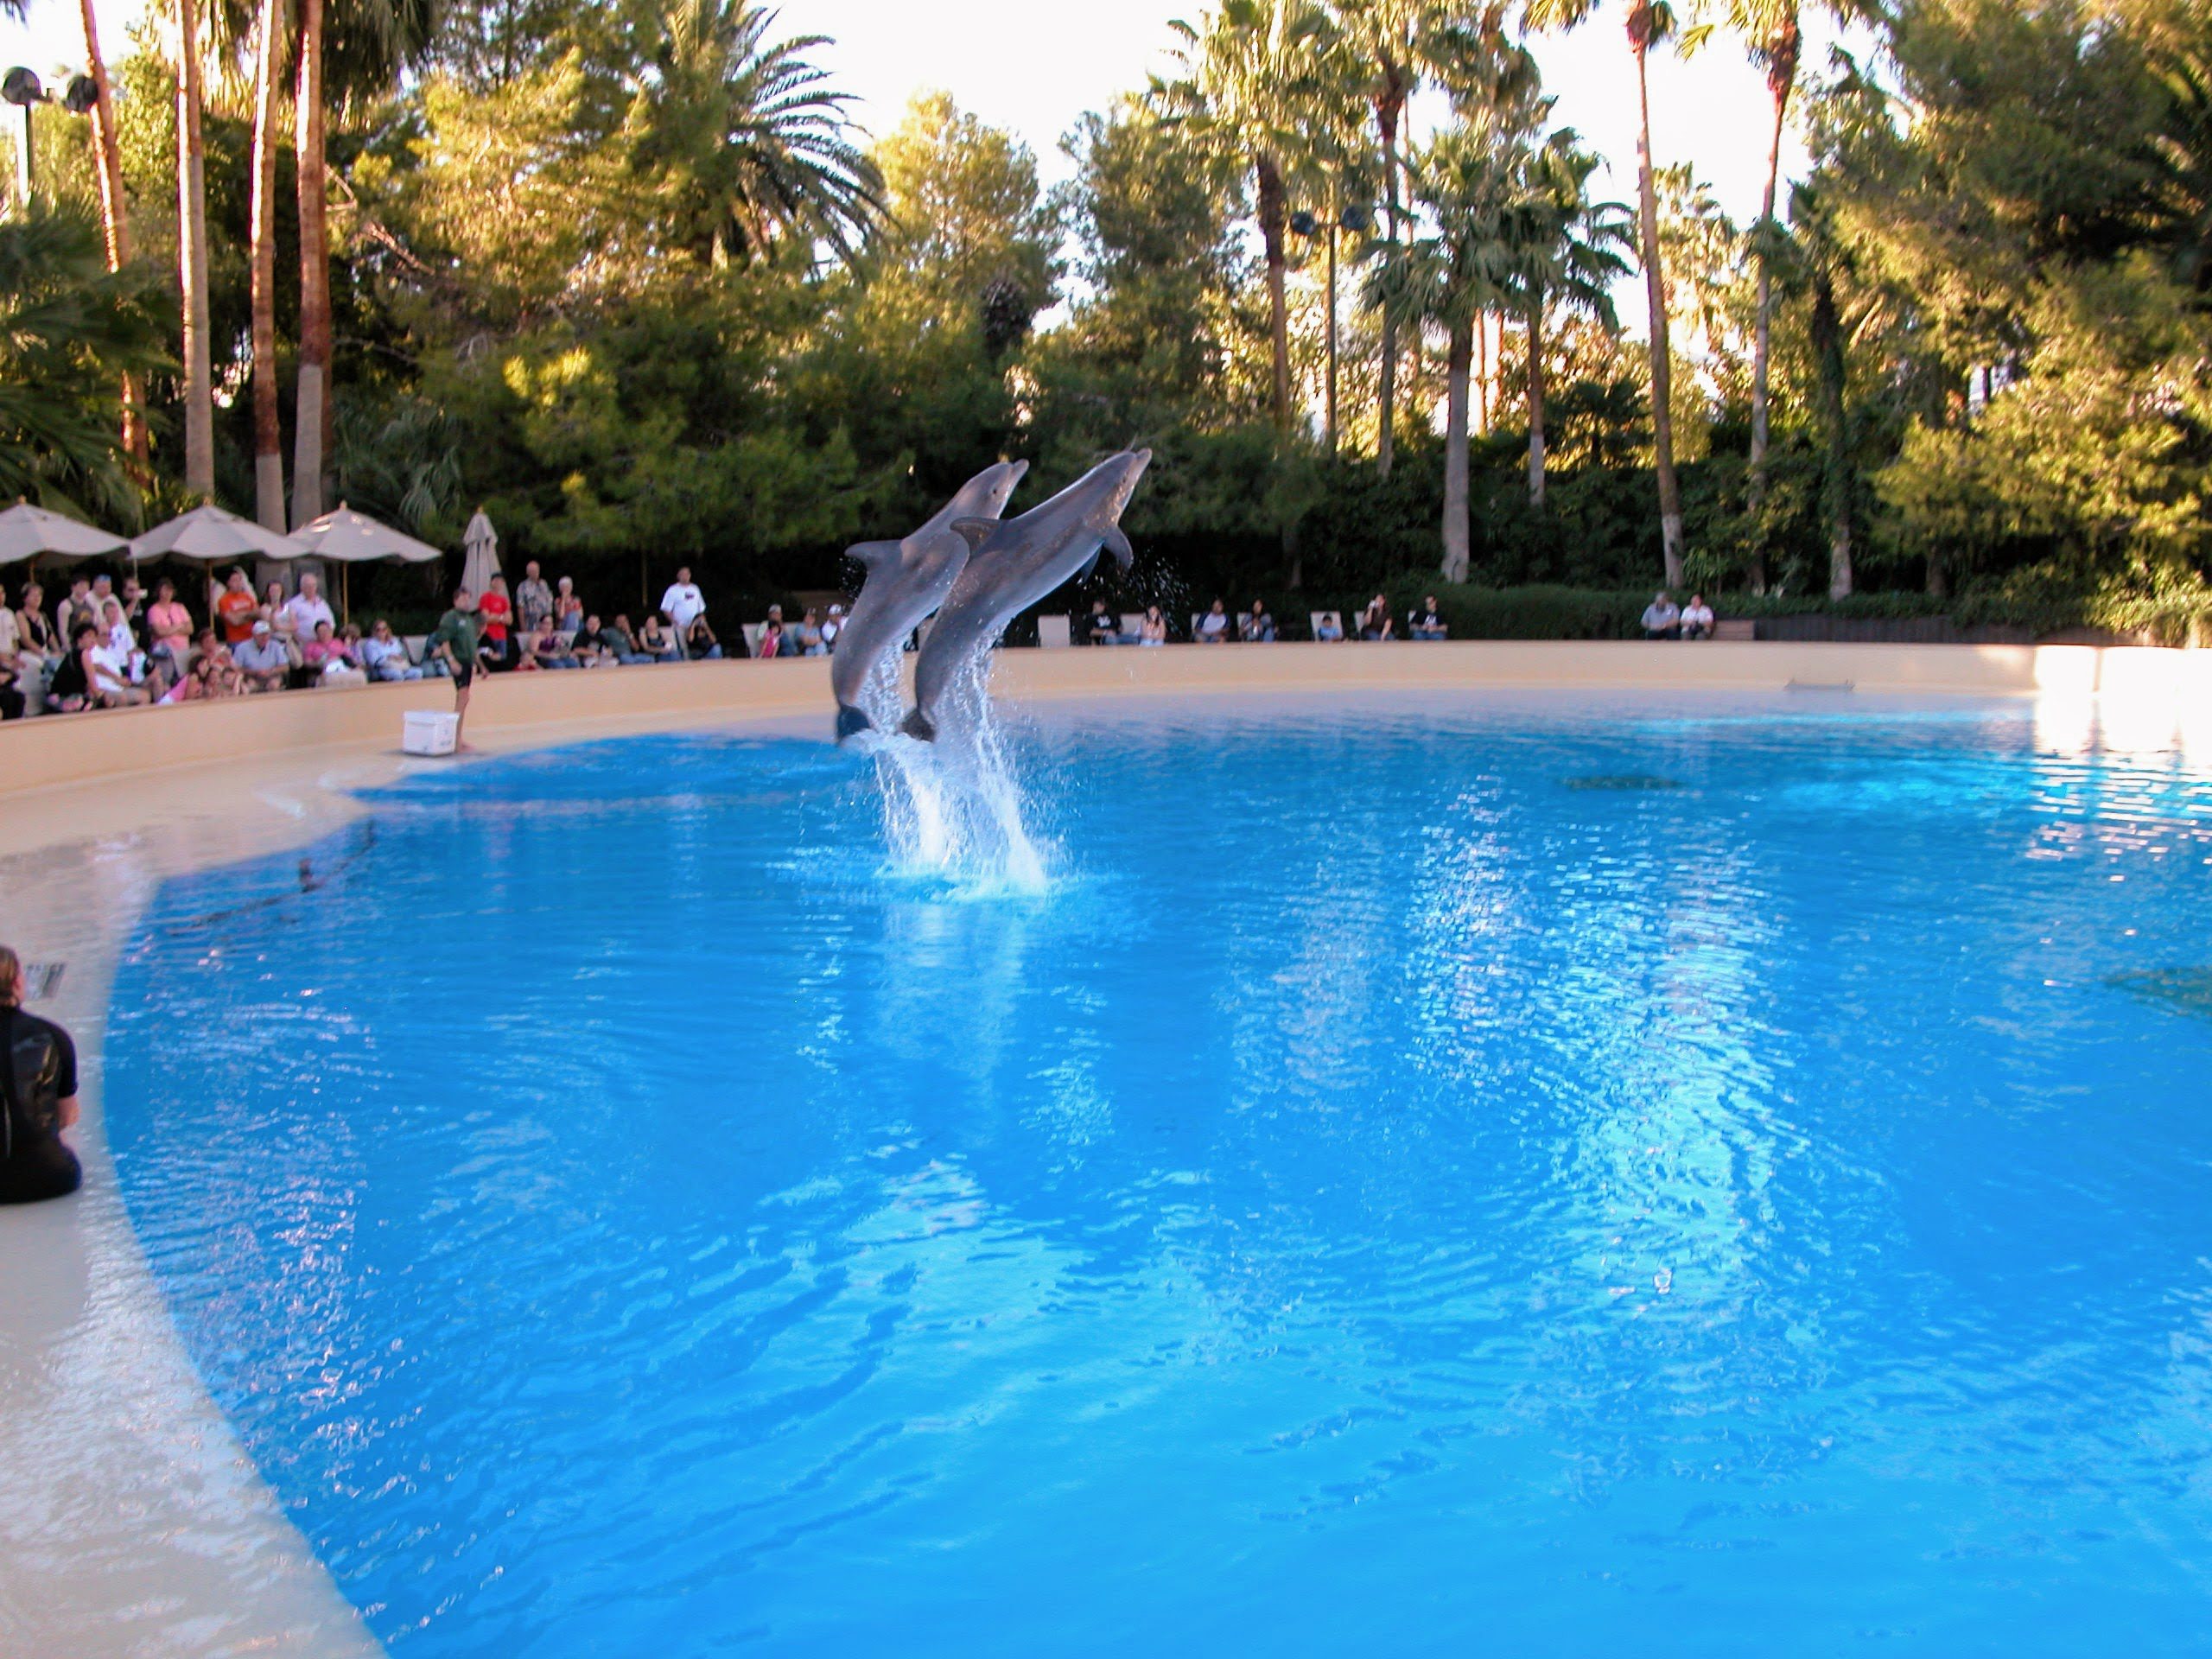 Dolphin Habitat at The Mirage, Las Vegas